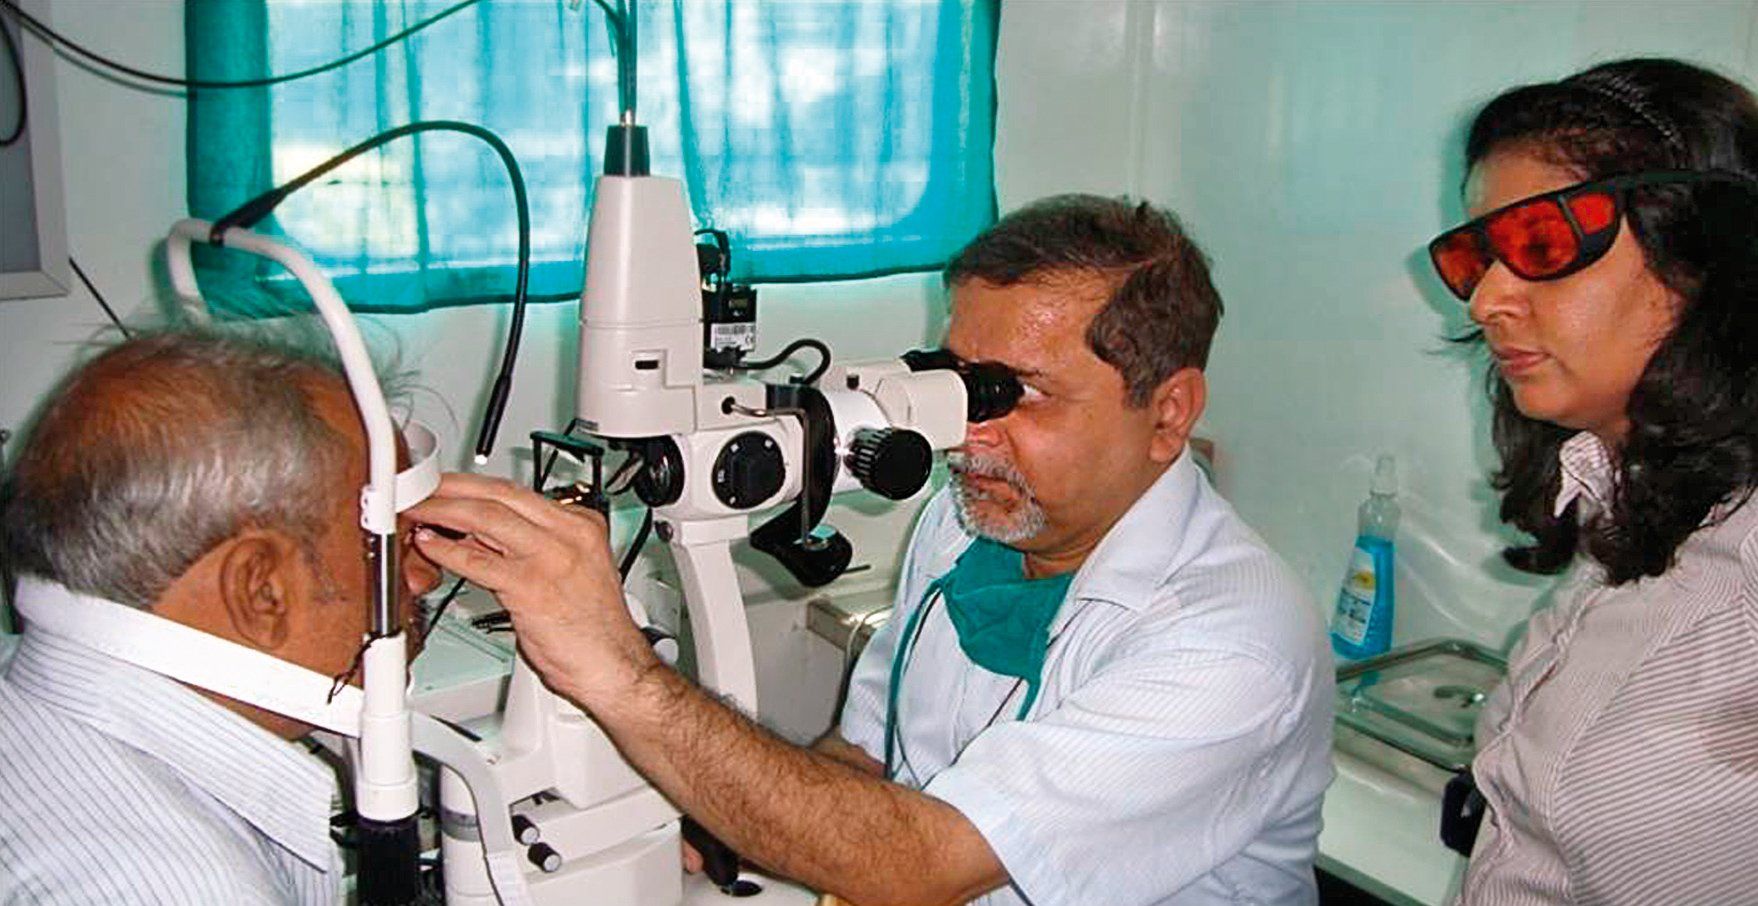 דירוג של מרפאות העיניים הטובות ביותר ברוסטוב און דון בשנת 2020